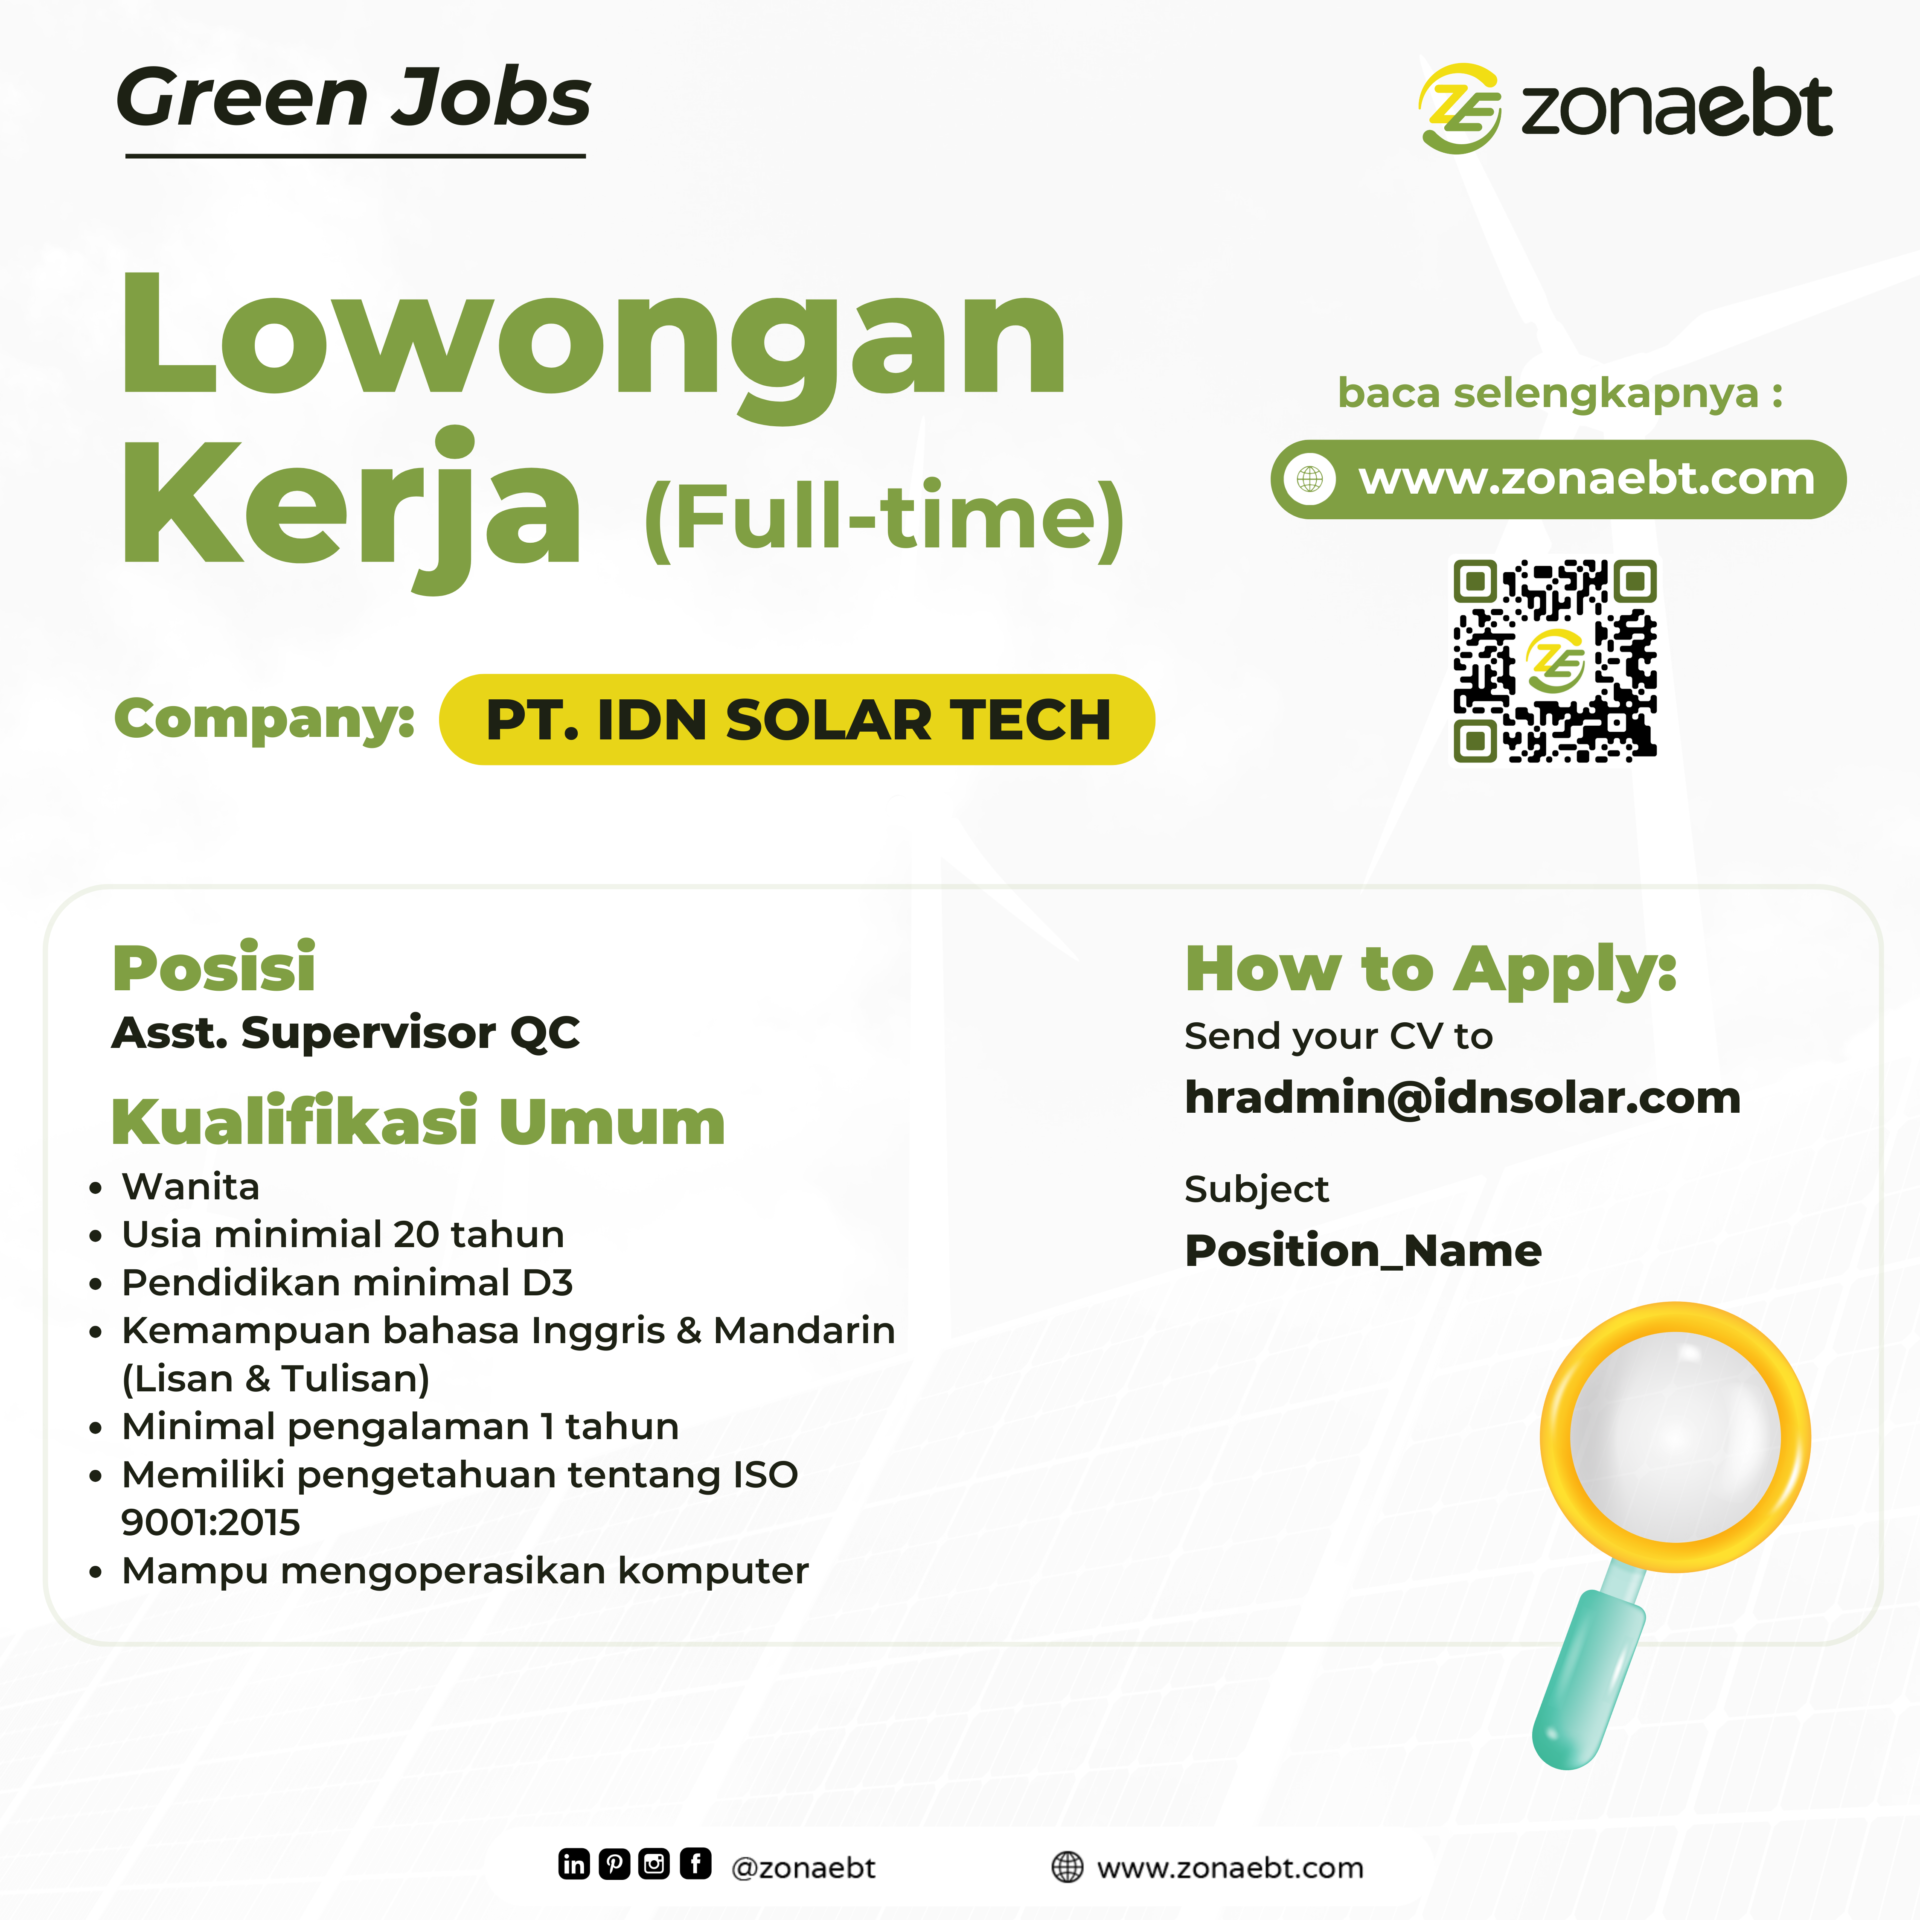 Post Asst. Supervisor QC green jobs zonaebt.com